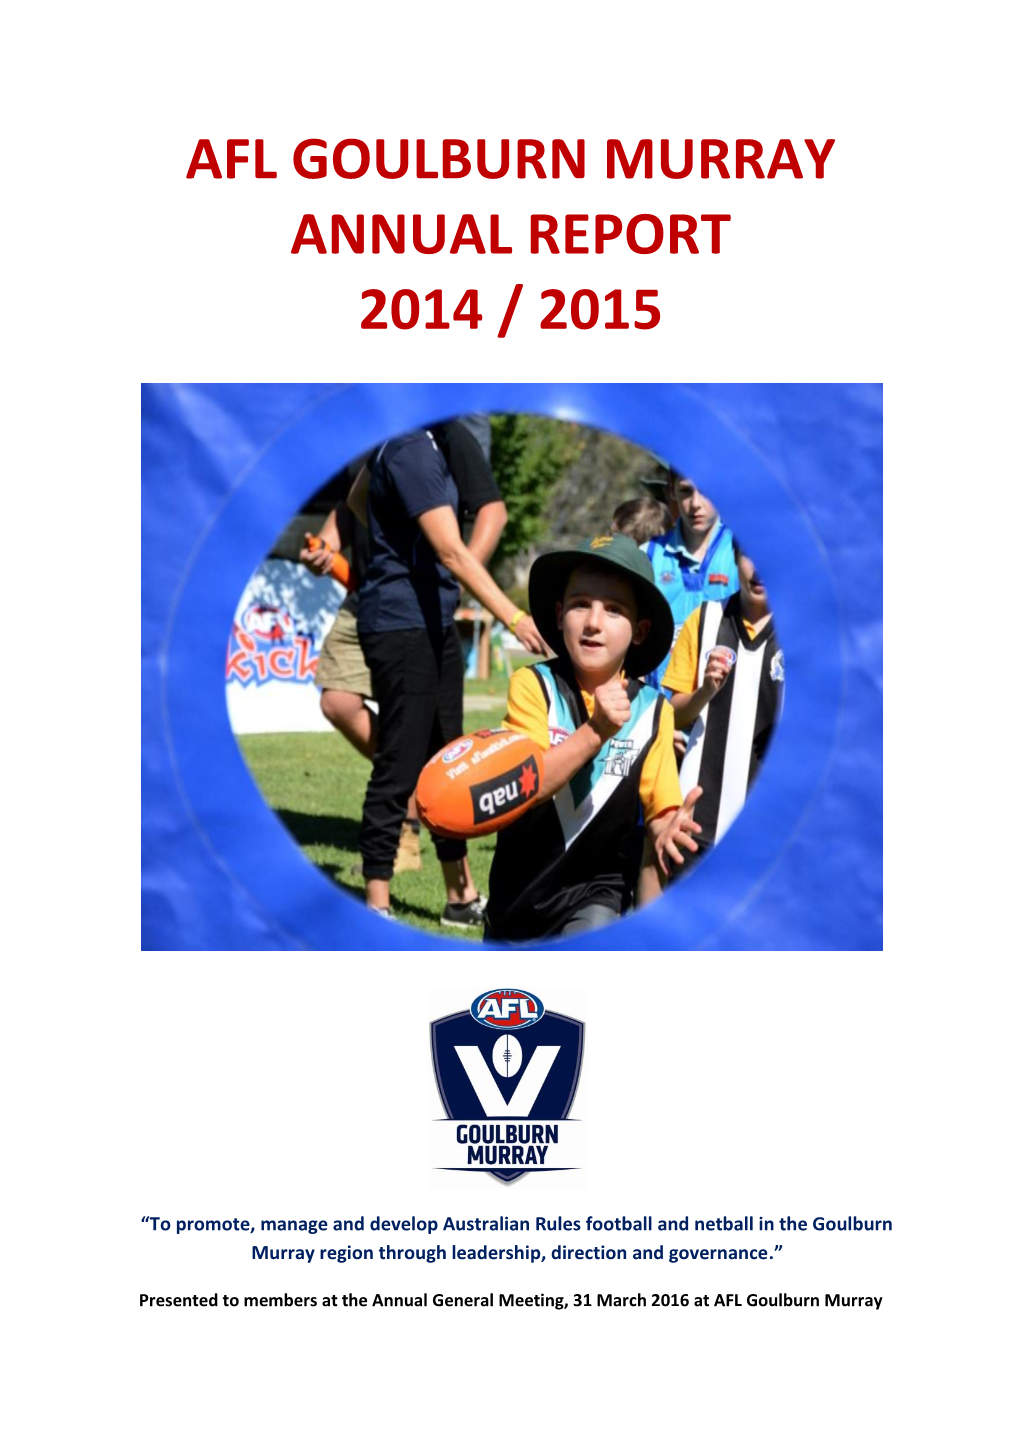 Afl Goulburn Murray Annual Report 2014 / 2015